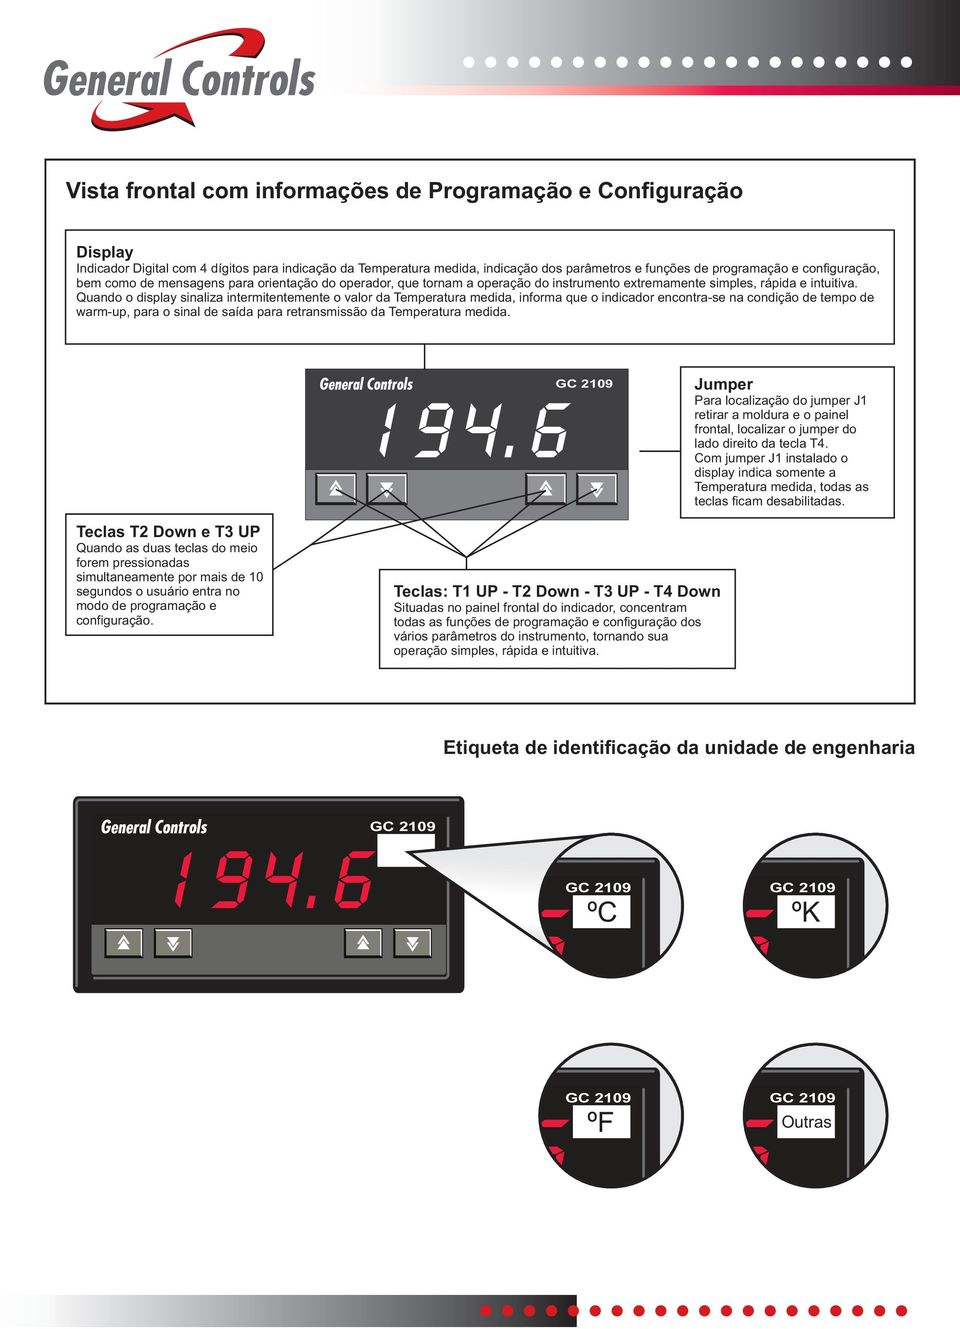 Quando o display sinaliza intermitentemente o valor da Temperatura medida, informa que o indicador encontra-se na condição de tempo de warm-up, para o sinal de saída para retransmissão da Temperatura